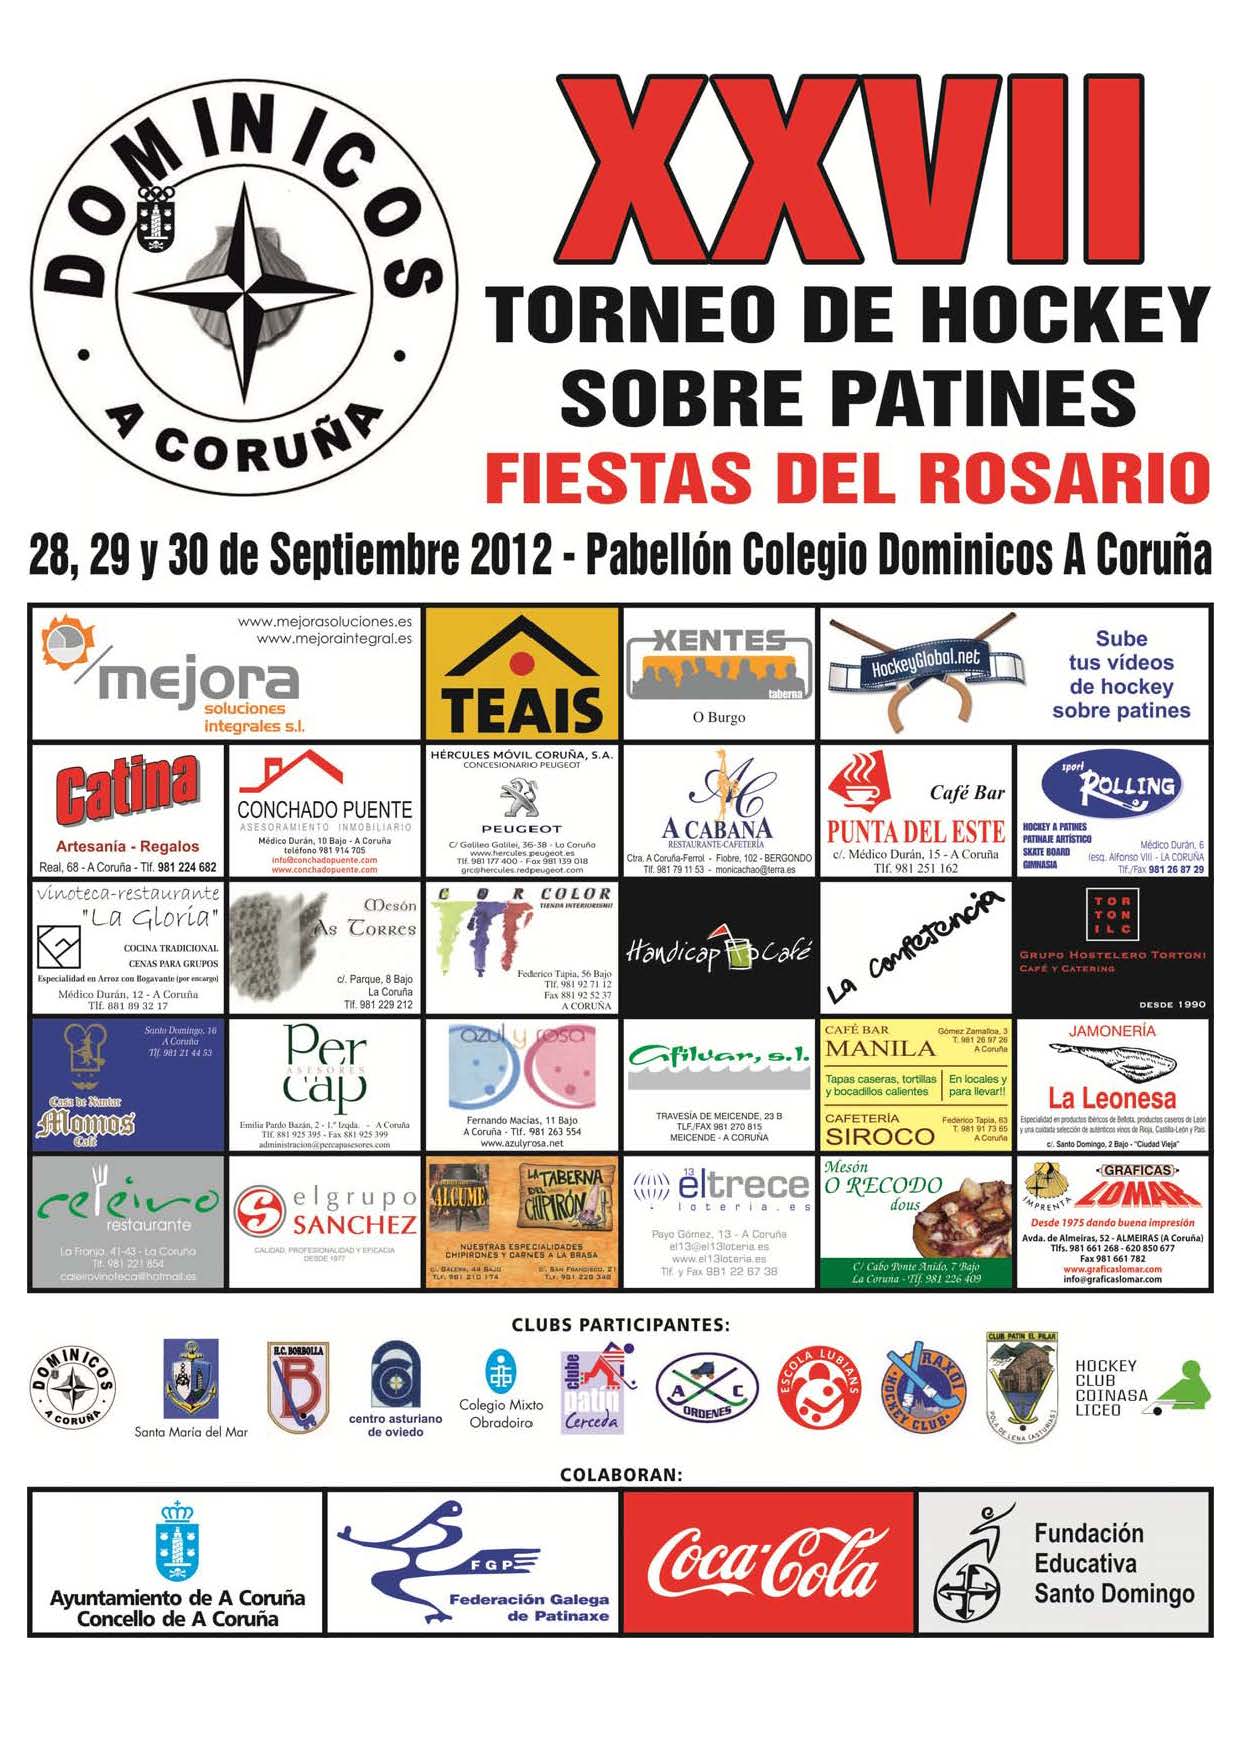 El Dominicos celebra el XXVII Torneo Fiestas del Rosario 2012 el 28, 29 y 30 de septiembre.